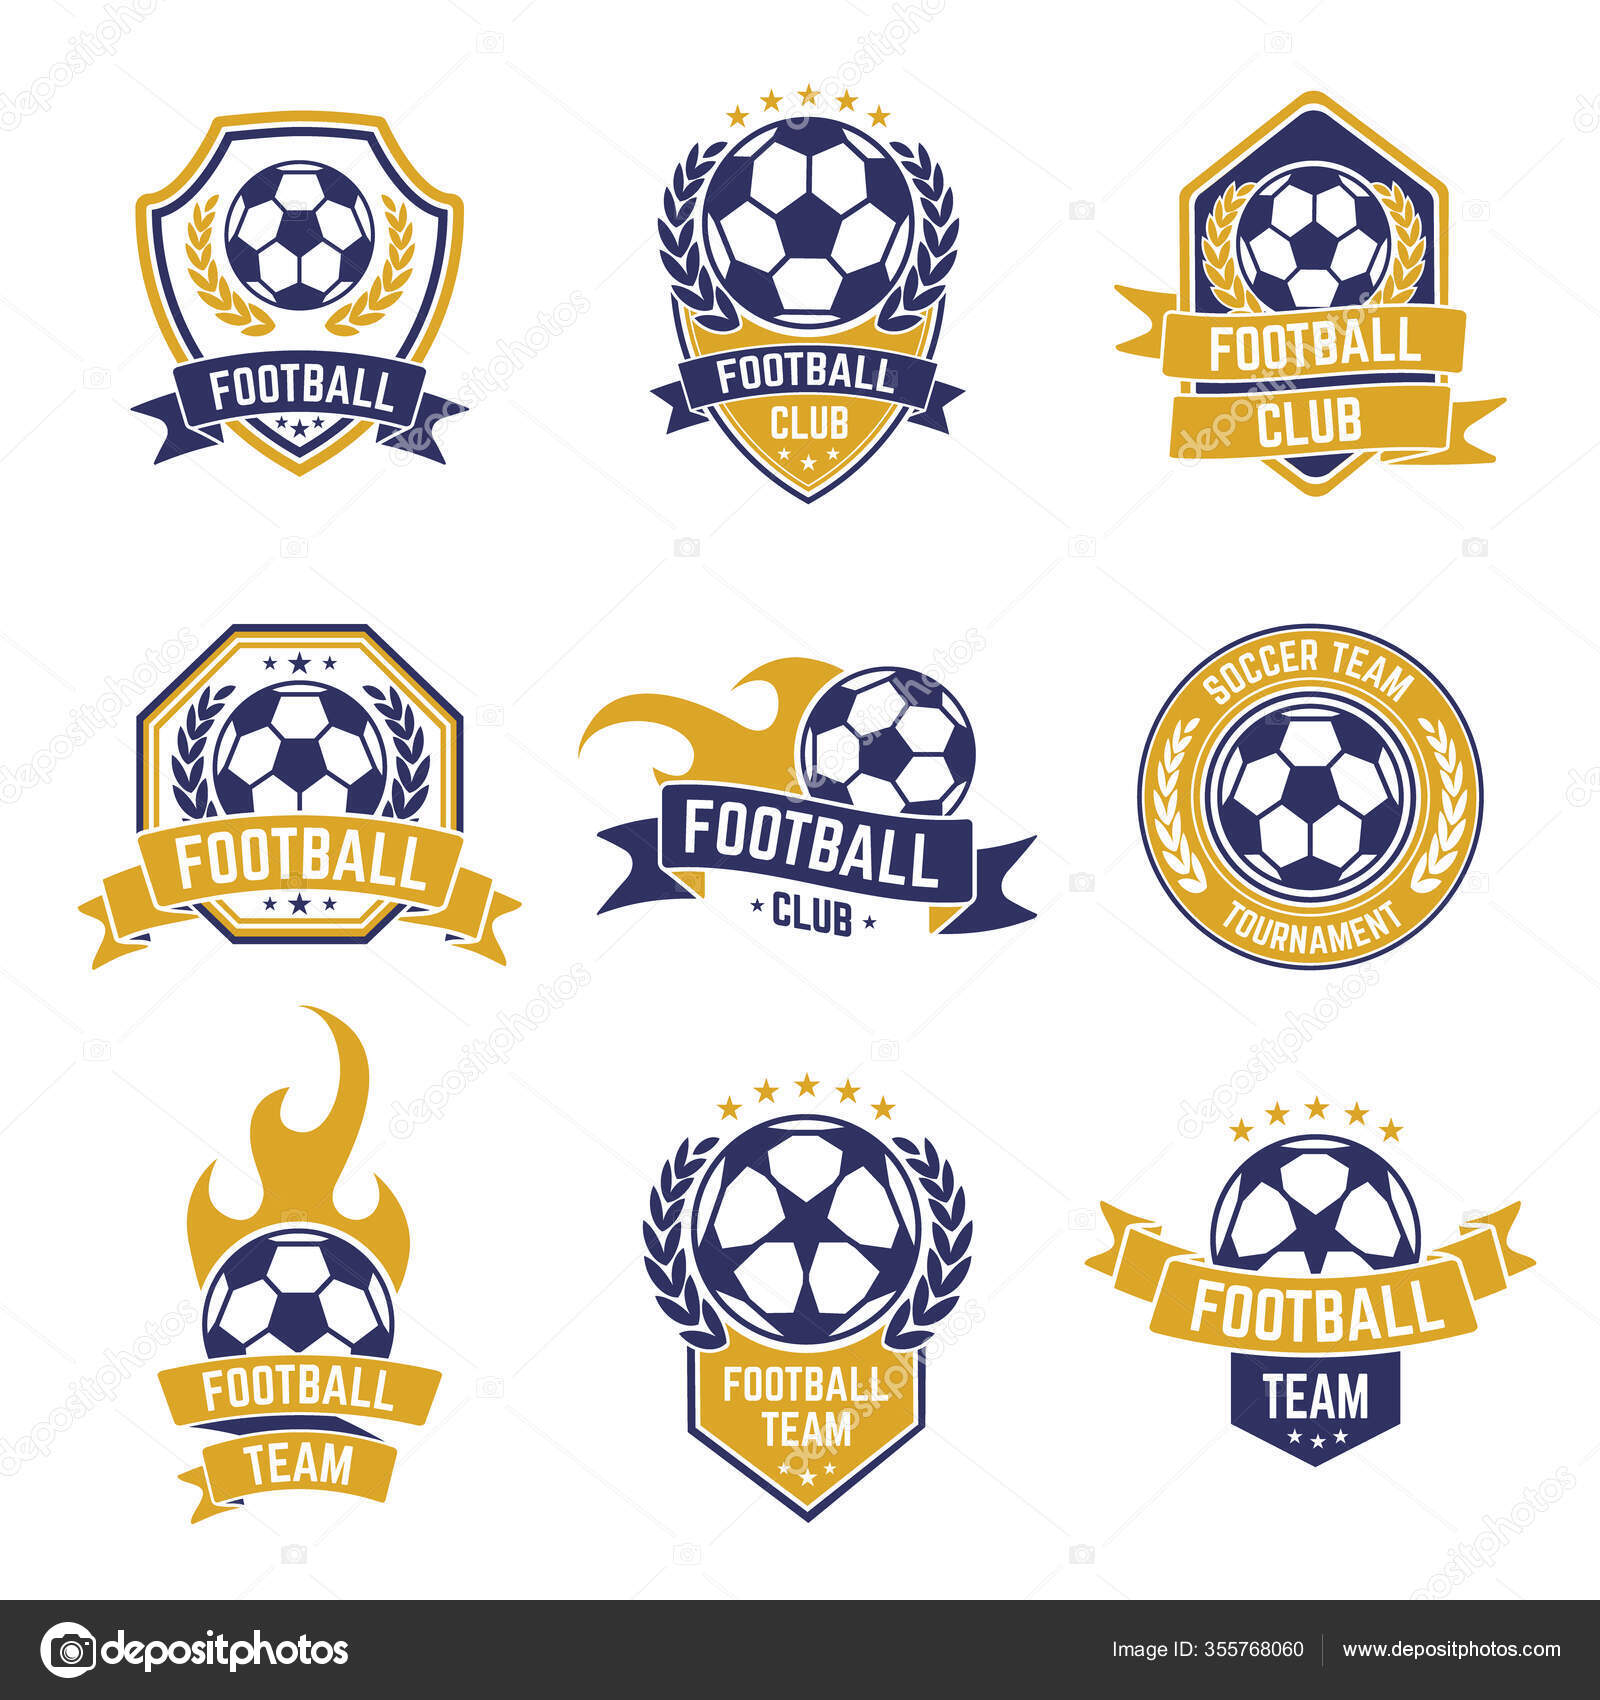 Ícone de bola de futebol símbolo de jogo de futebol dos desenhos